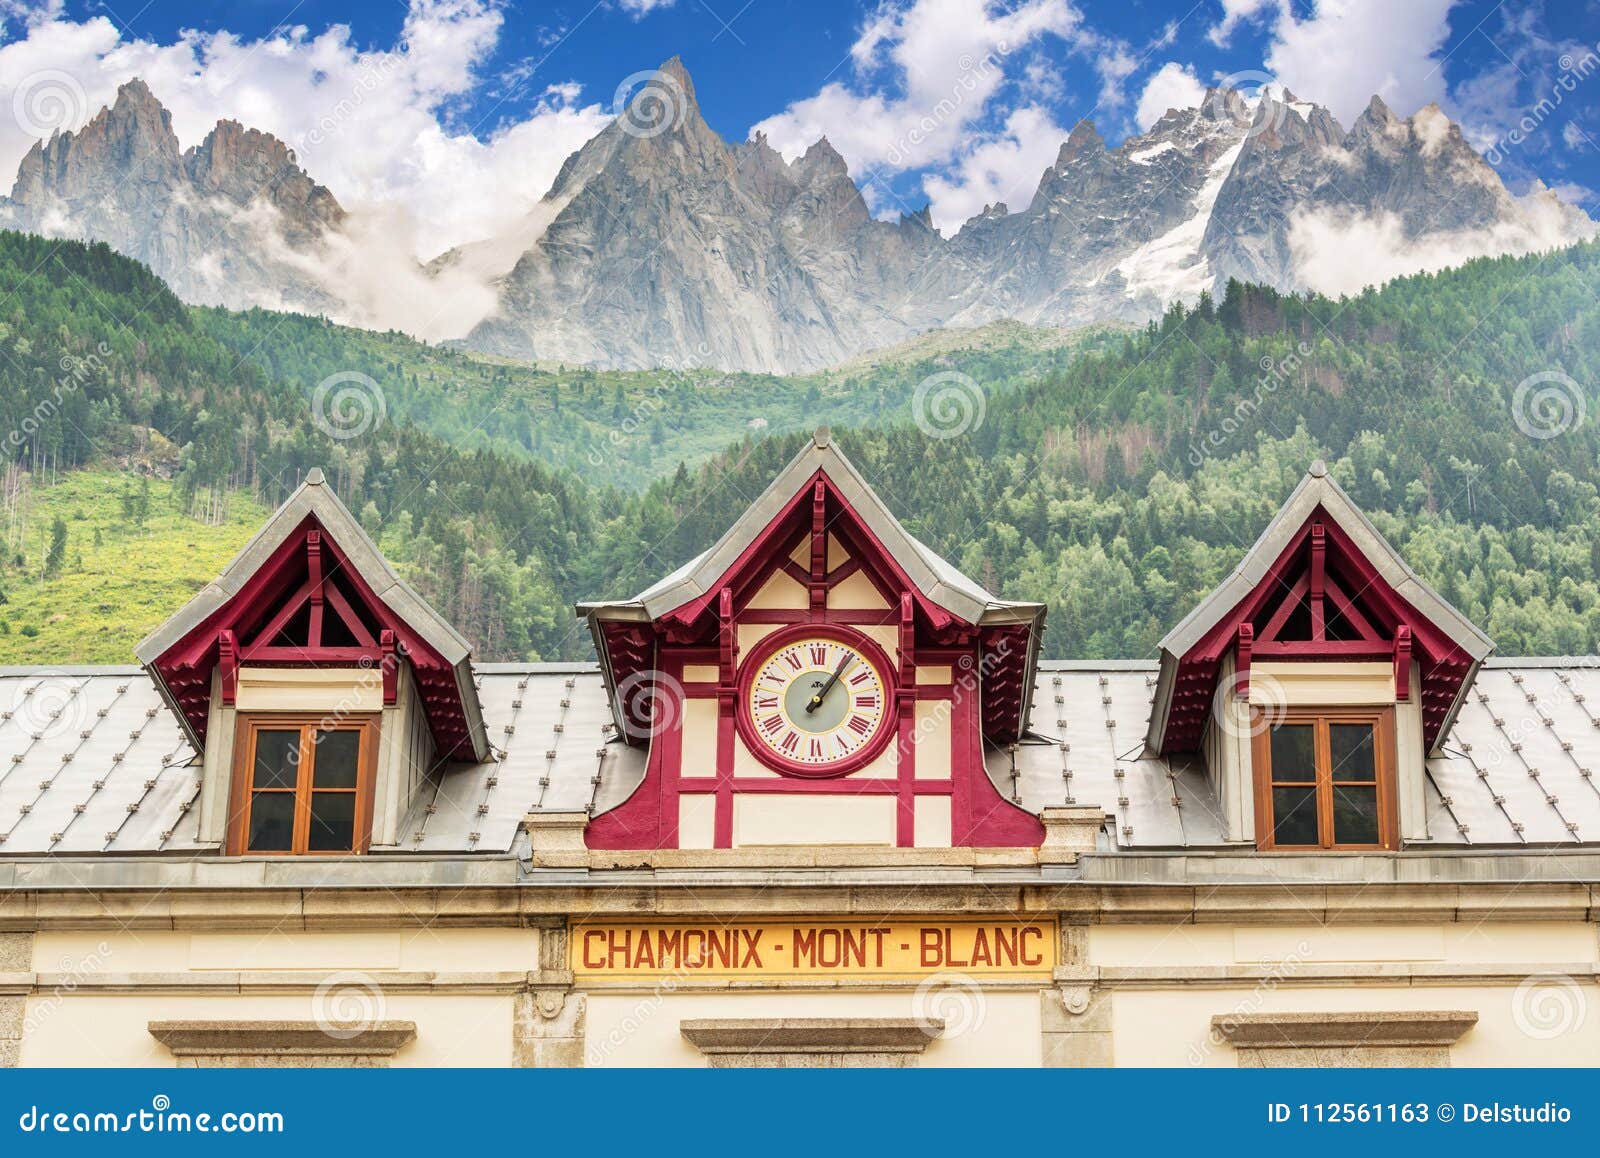 chamonix mont blanc train station, les aiguilles de chamonix in the backgound, the alps france